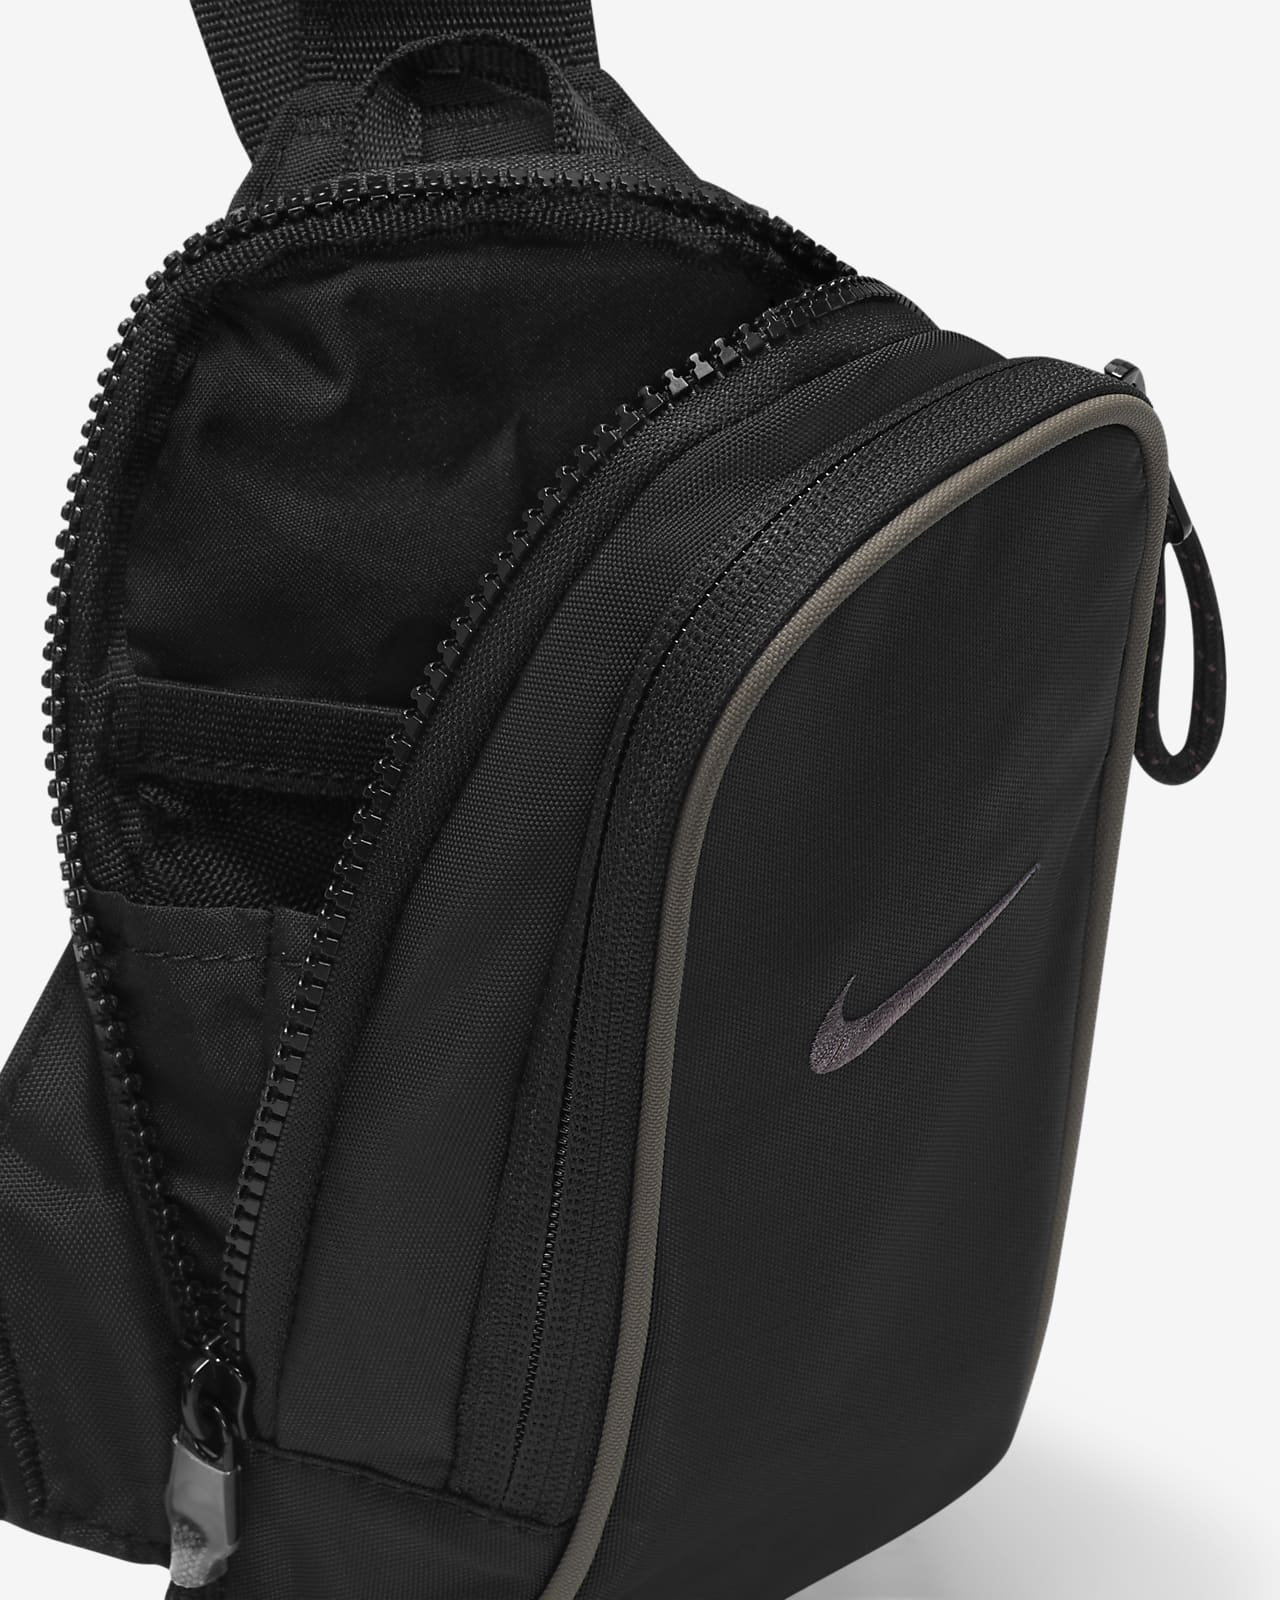 Nike Cascade Messenger Black Laptop Bag - Walmart.com